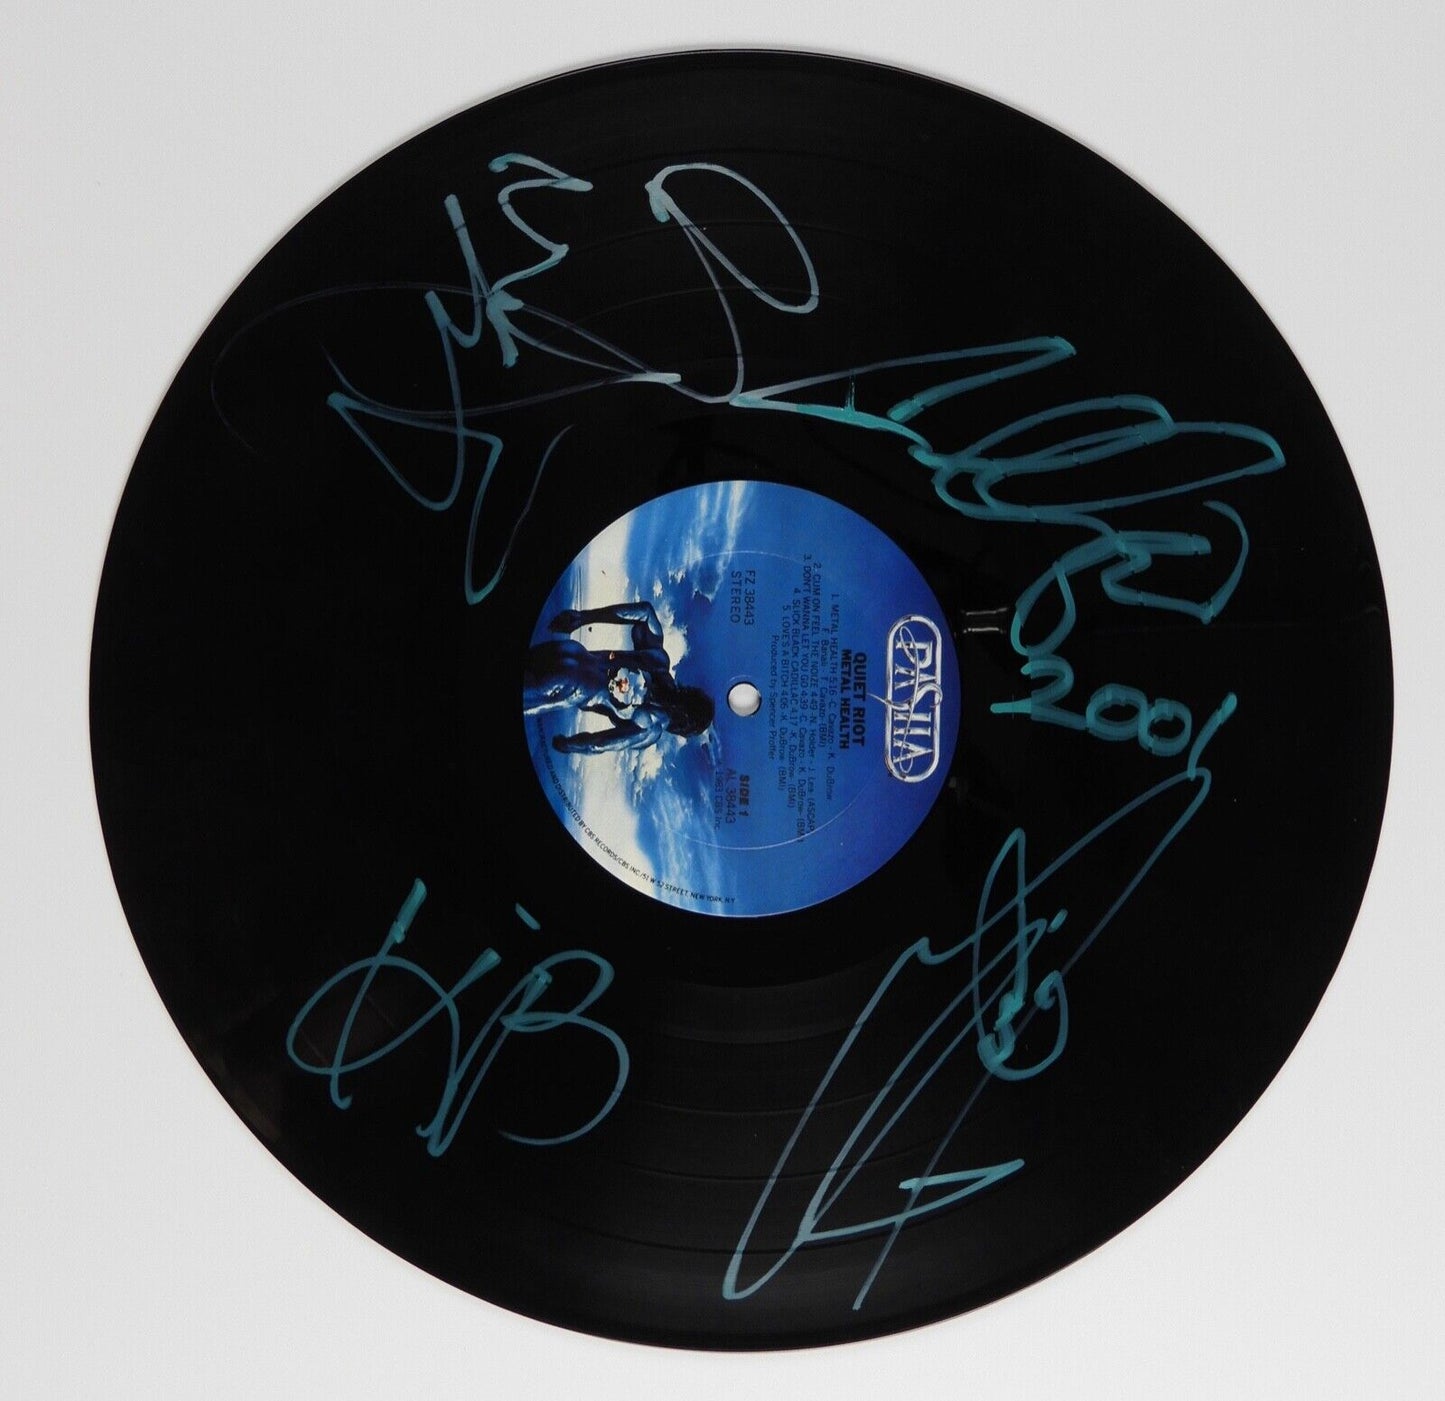 Quiet Riot Signed Autograph JSA Record Album Vinyl Metal Health Kevin DuBrow